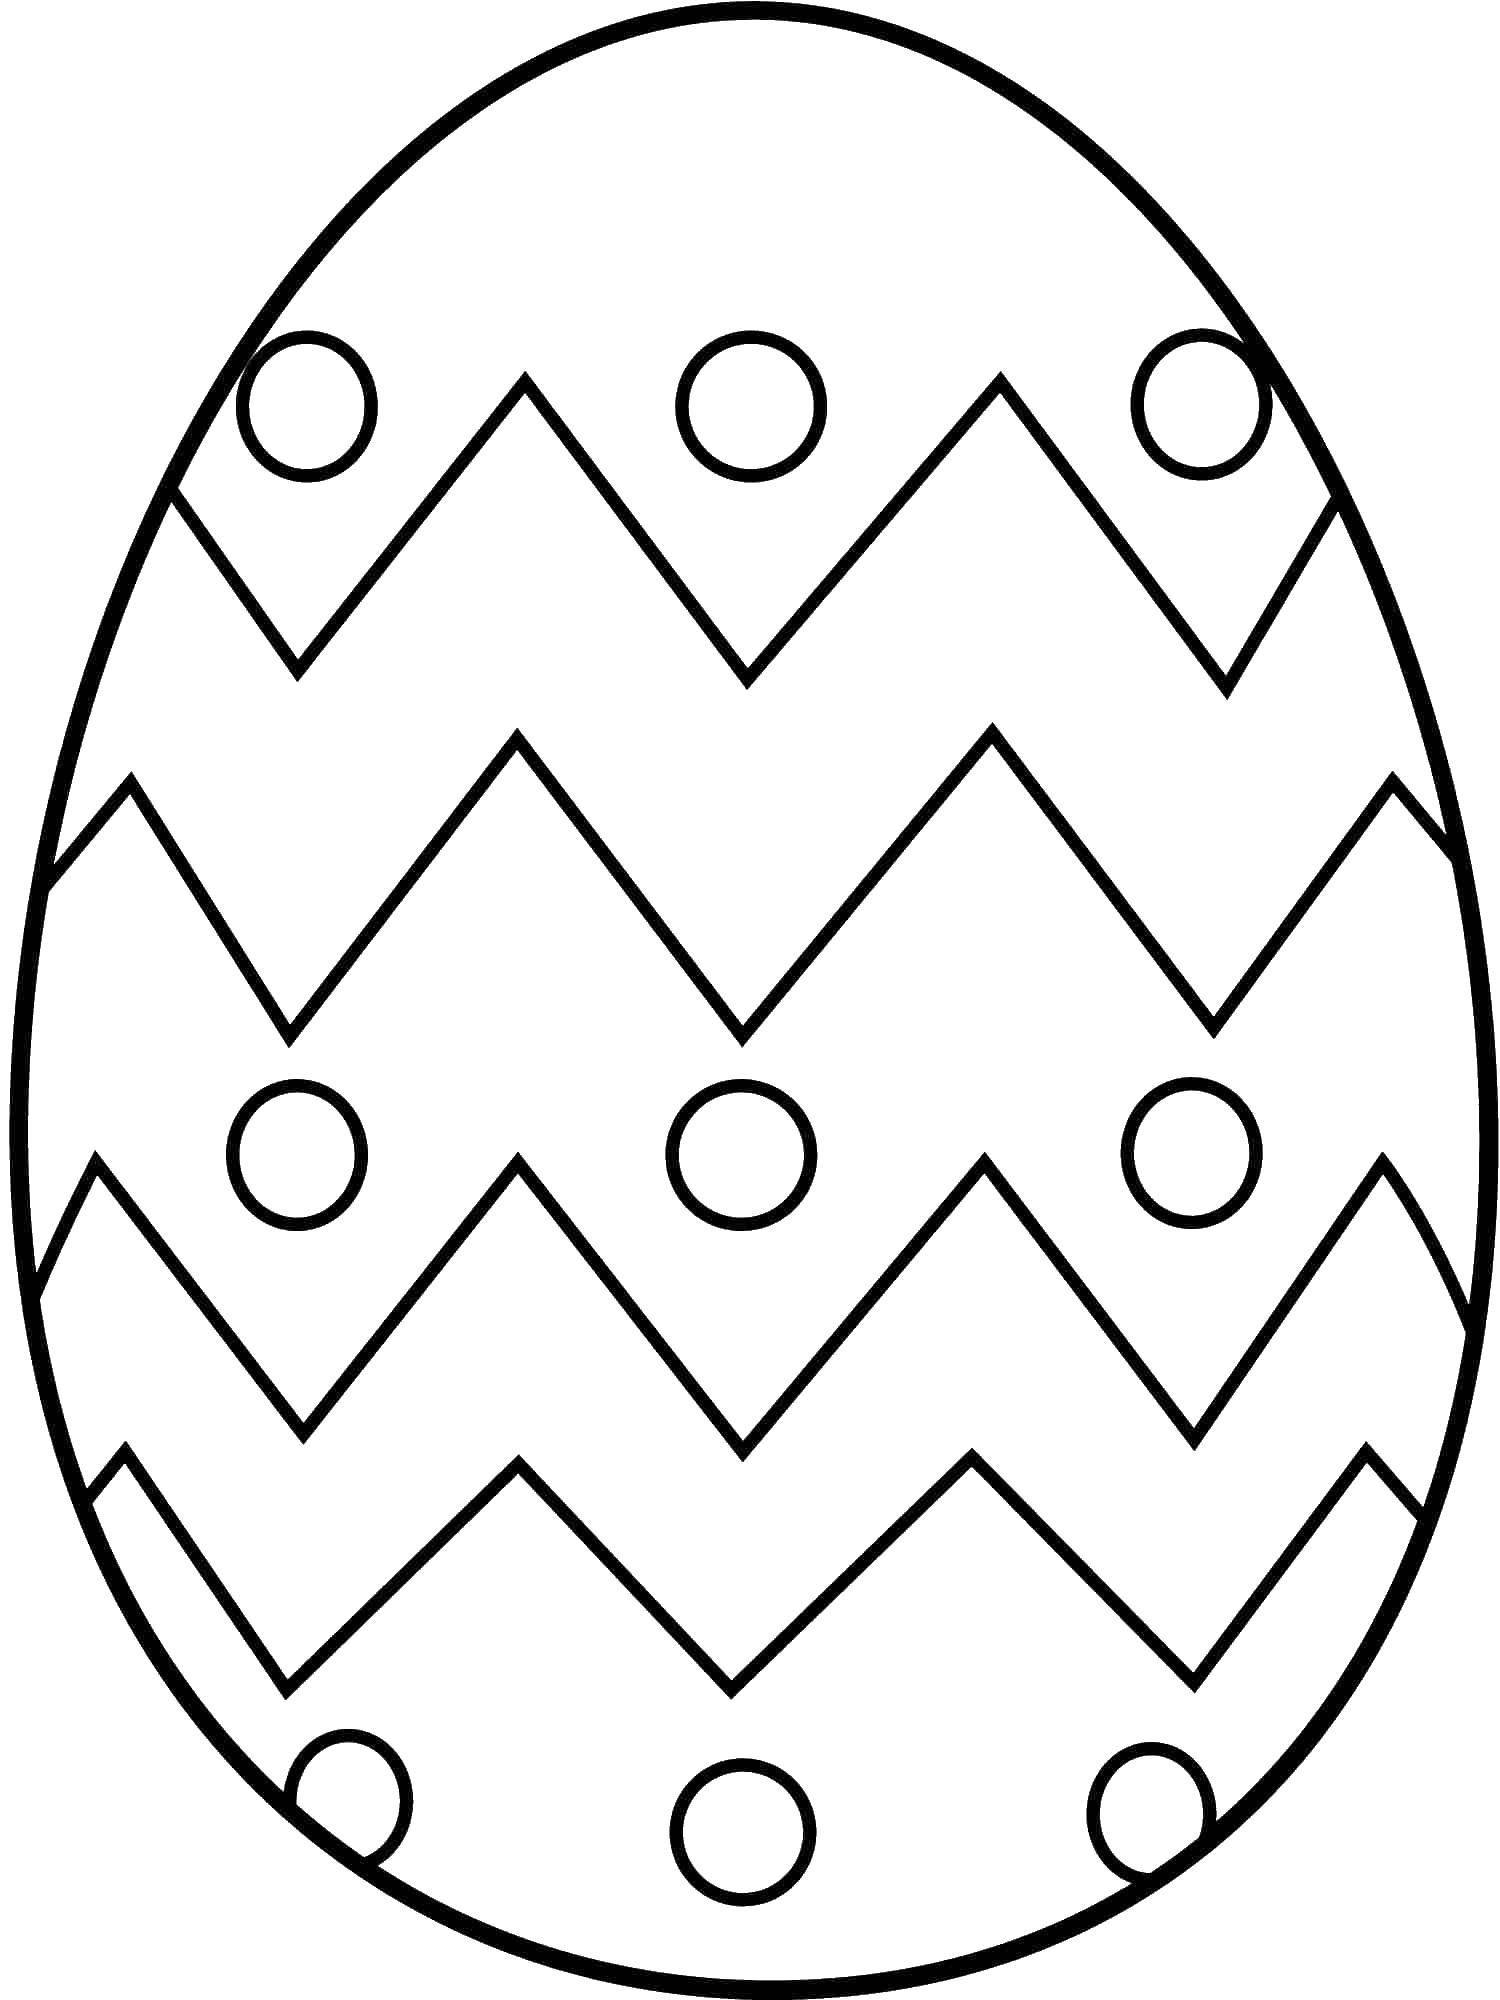 Название: Раскраска Пасхальные яйца. Категория: пасхальные яйца. Теги: пасхальные яйца, корзина, пасха.